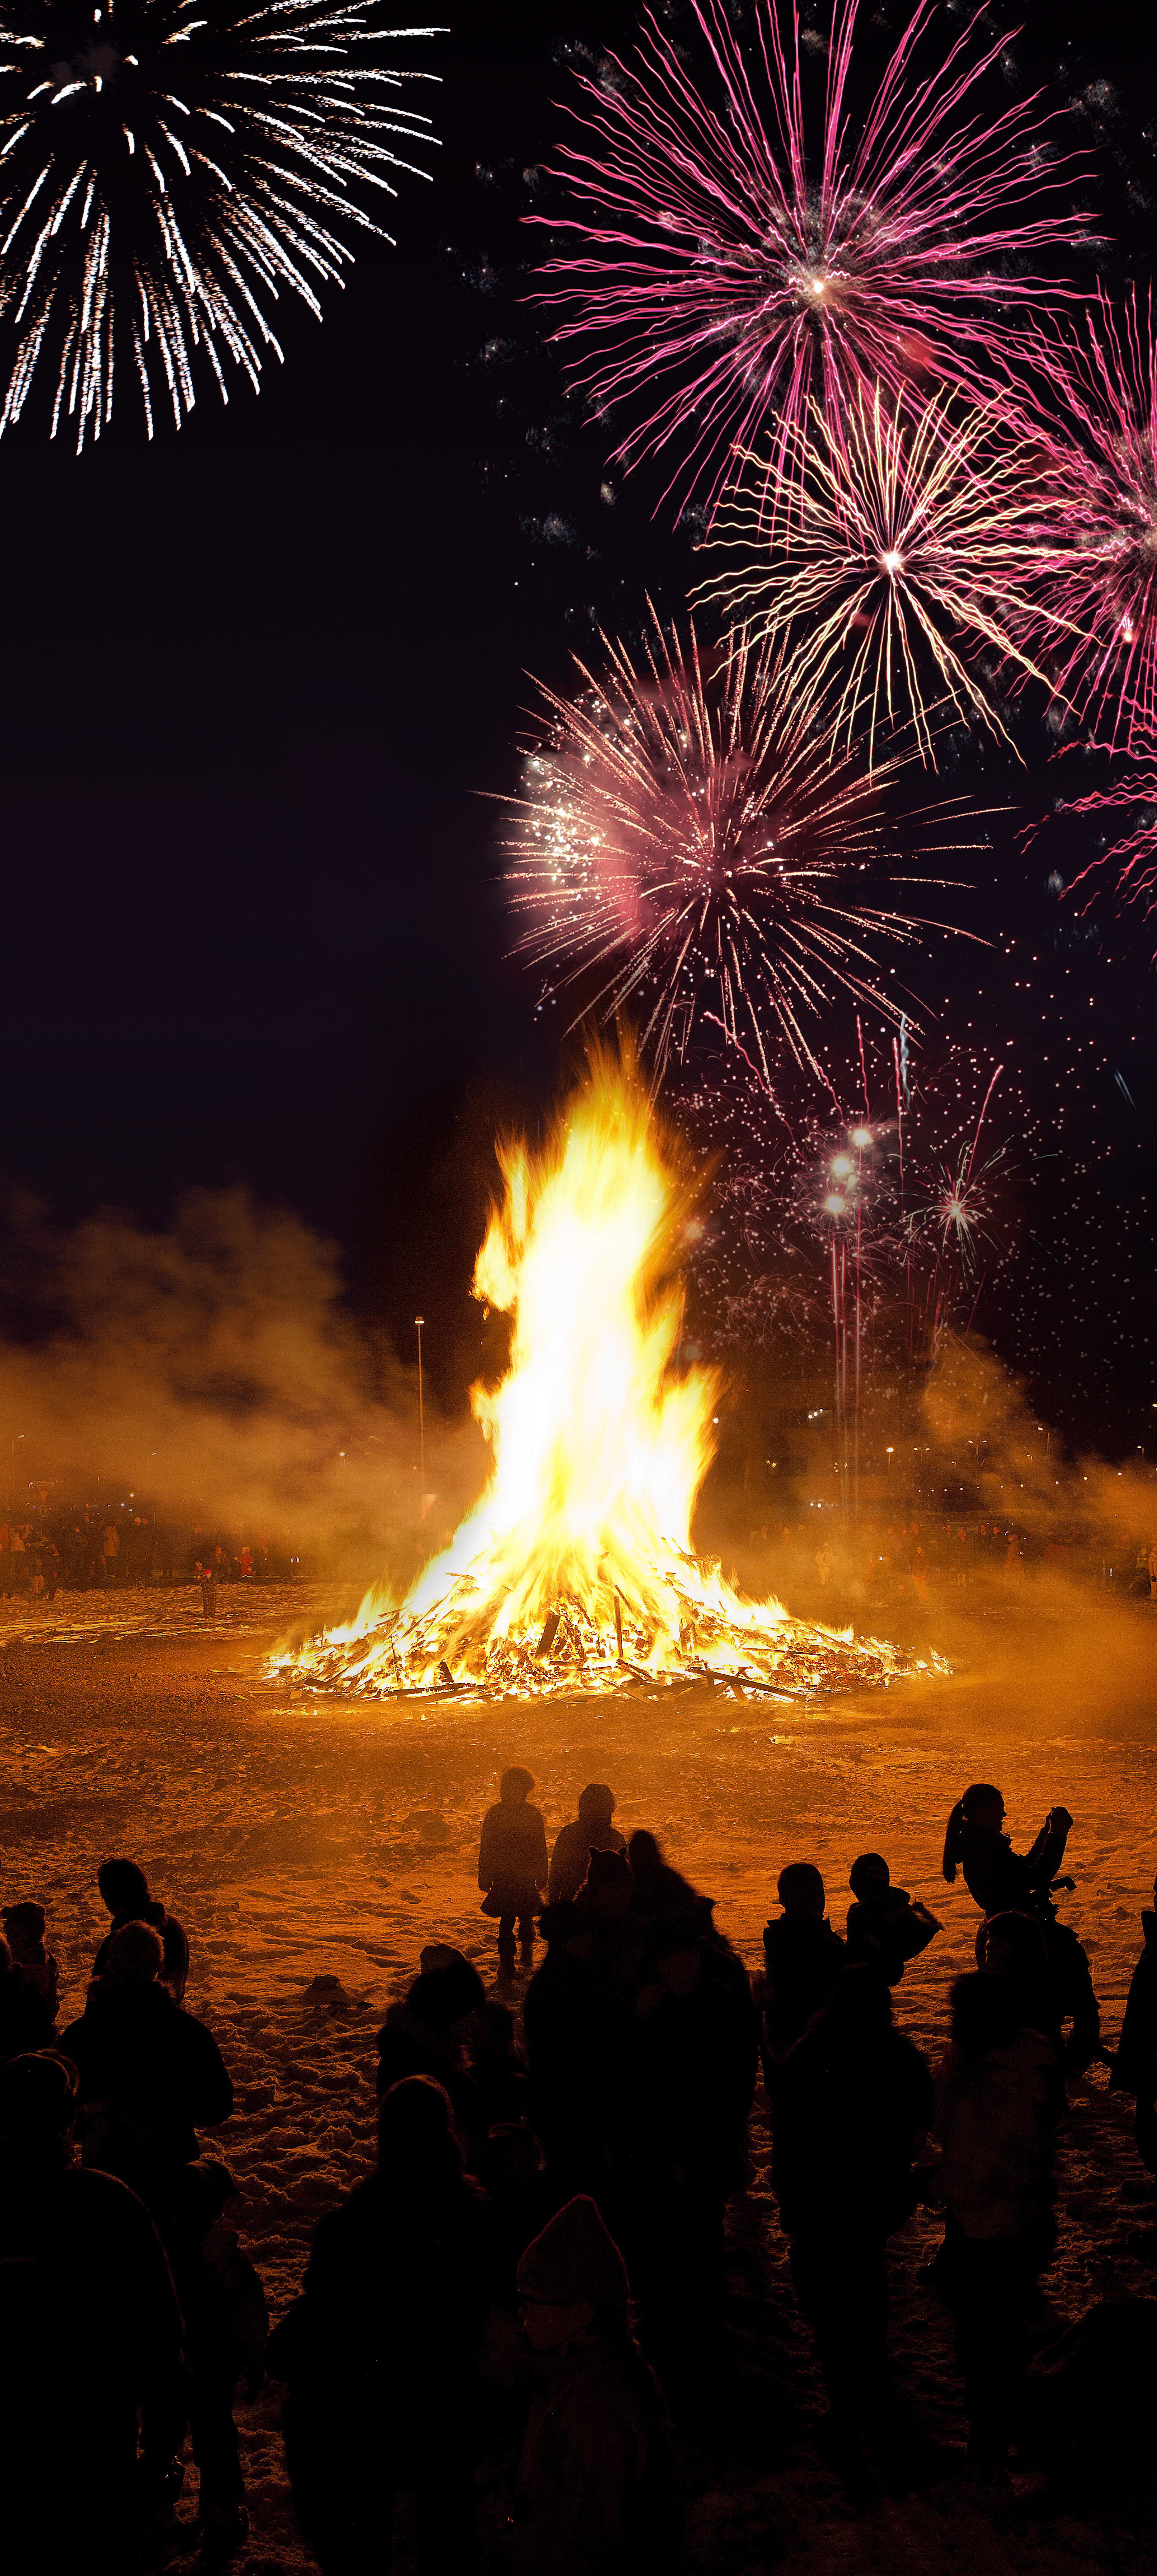 레이카비크- 새해축제에 모닥불은 빠질 수 없는 잇템이죠!